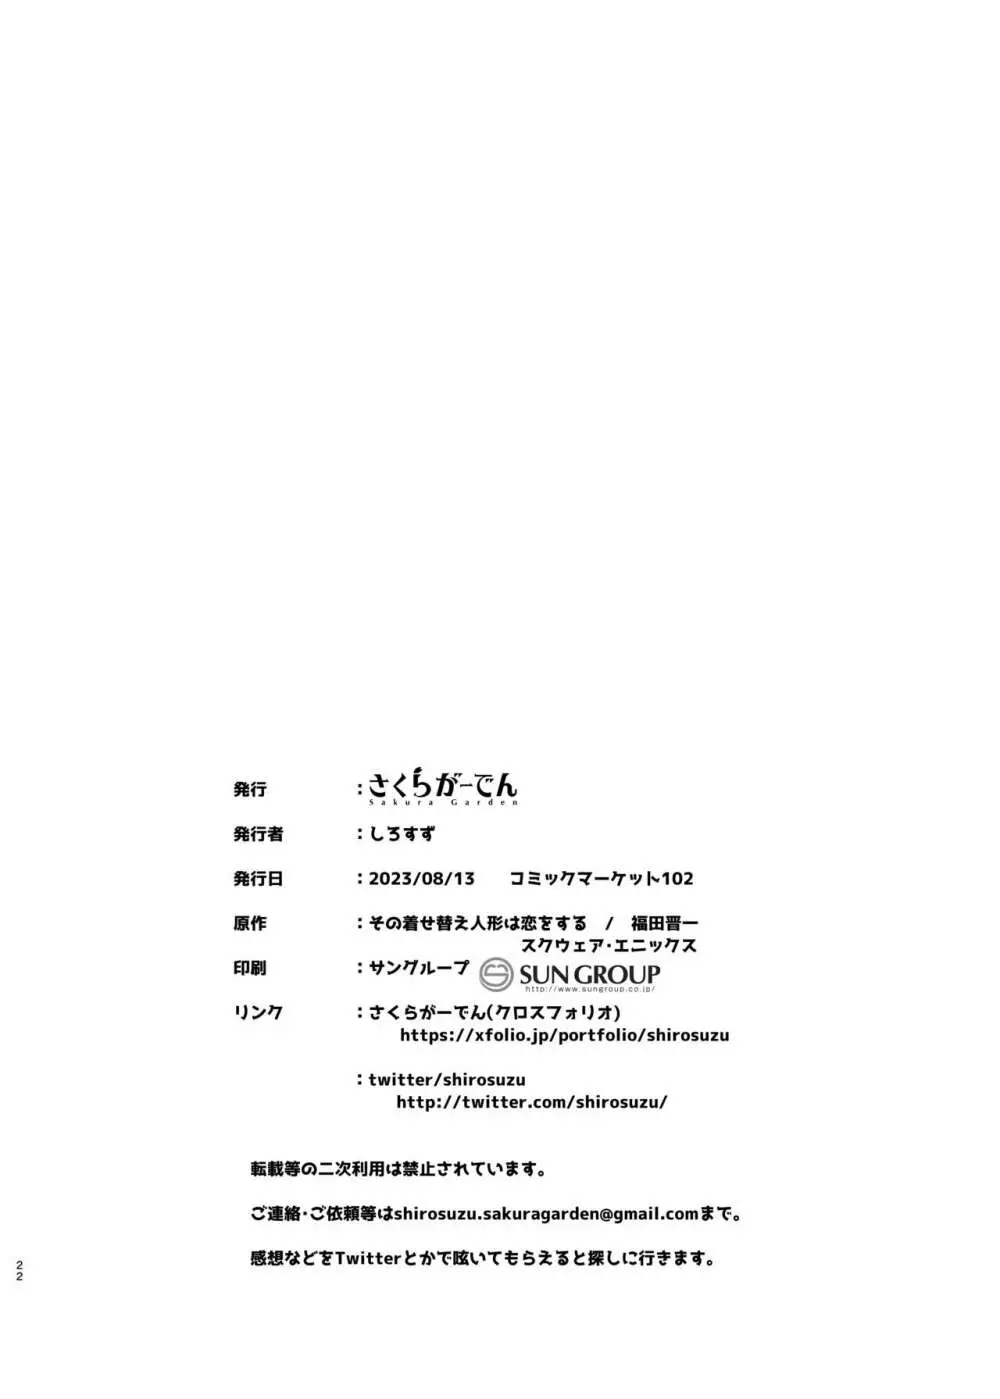 ホ込み0円コスパコ撮影会.mp4 22ページ